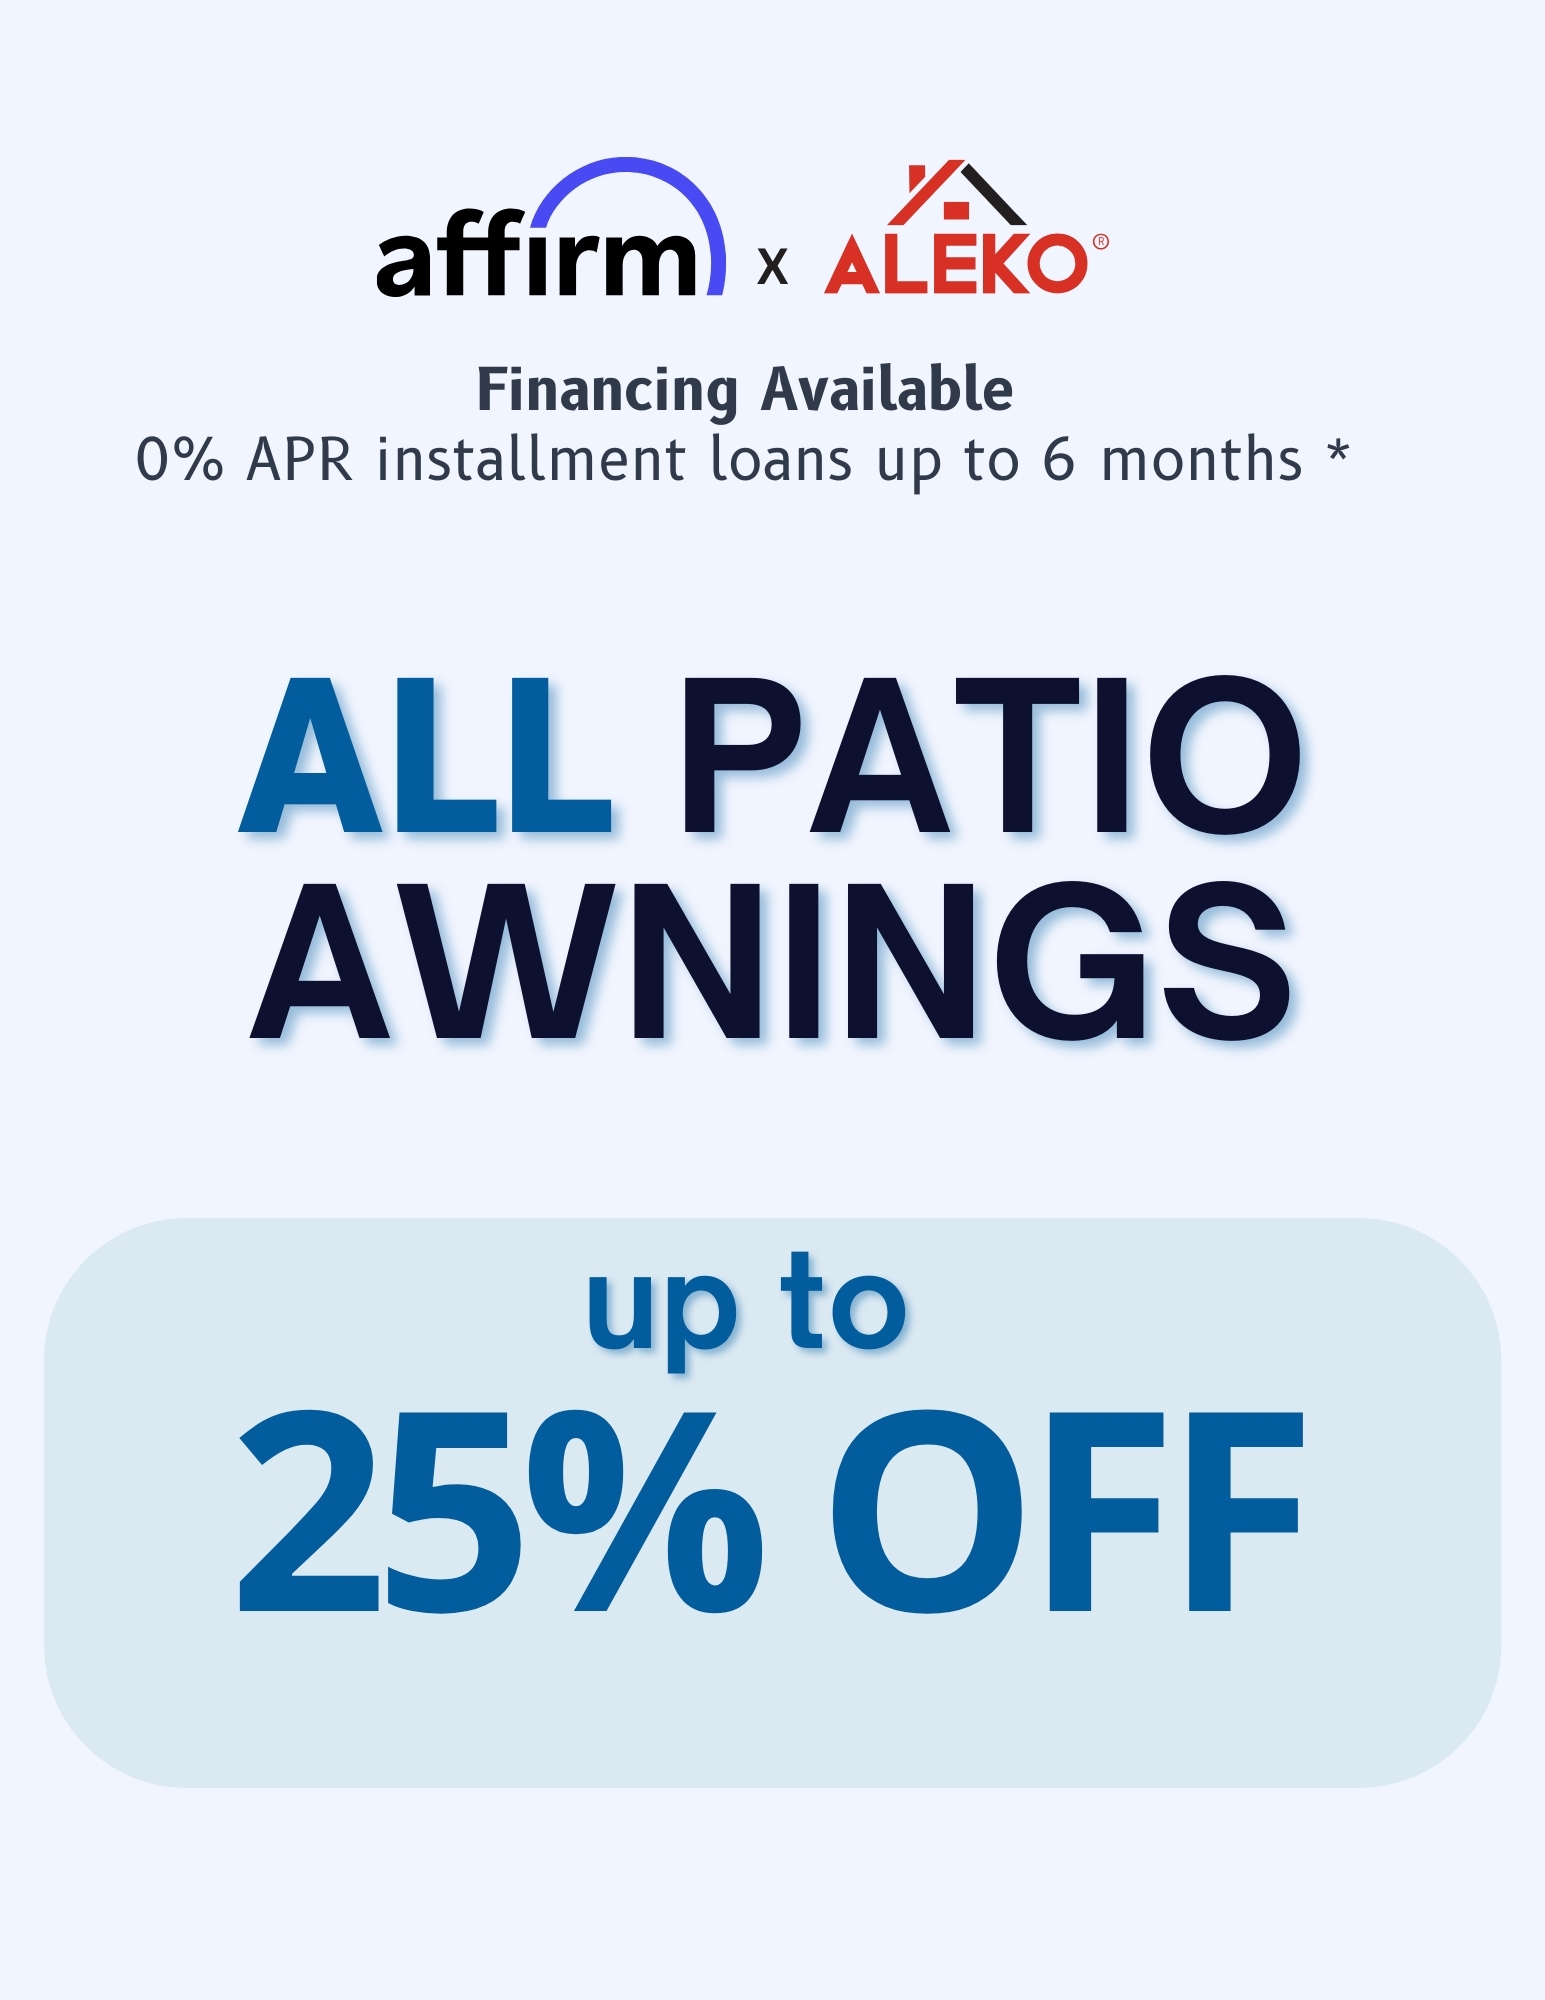 ALEKO Patio Awnings 25% SALE